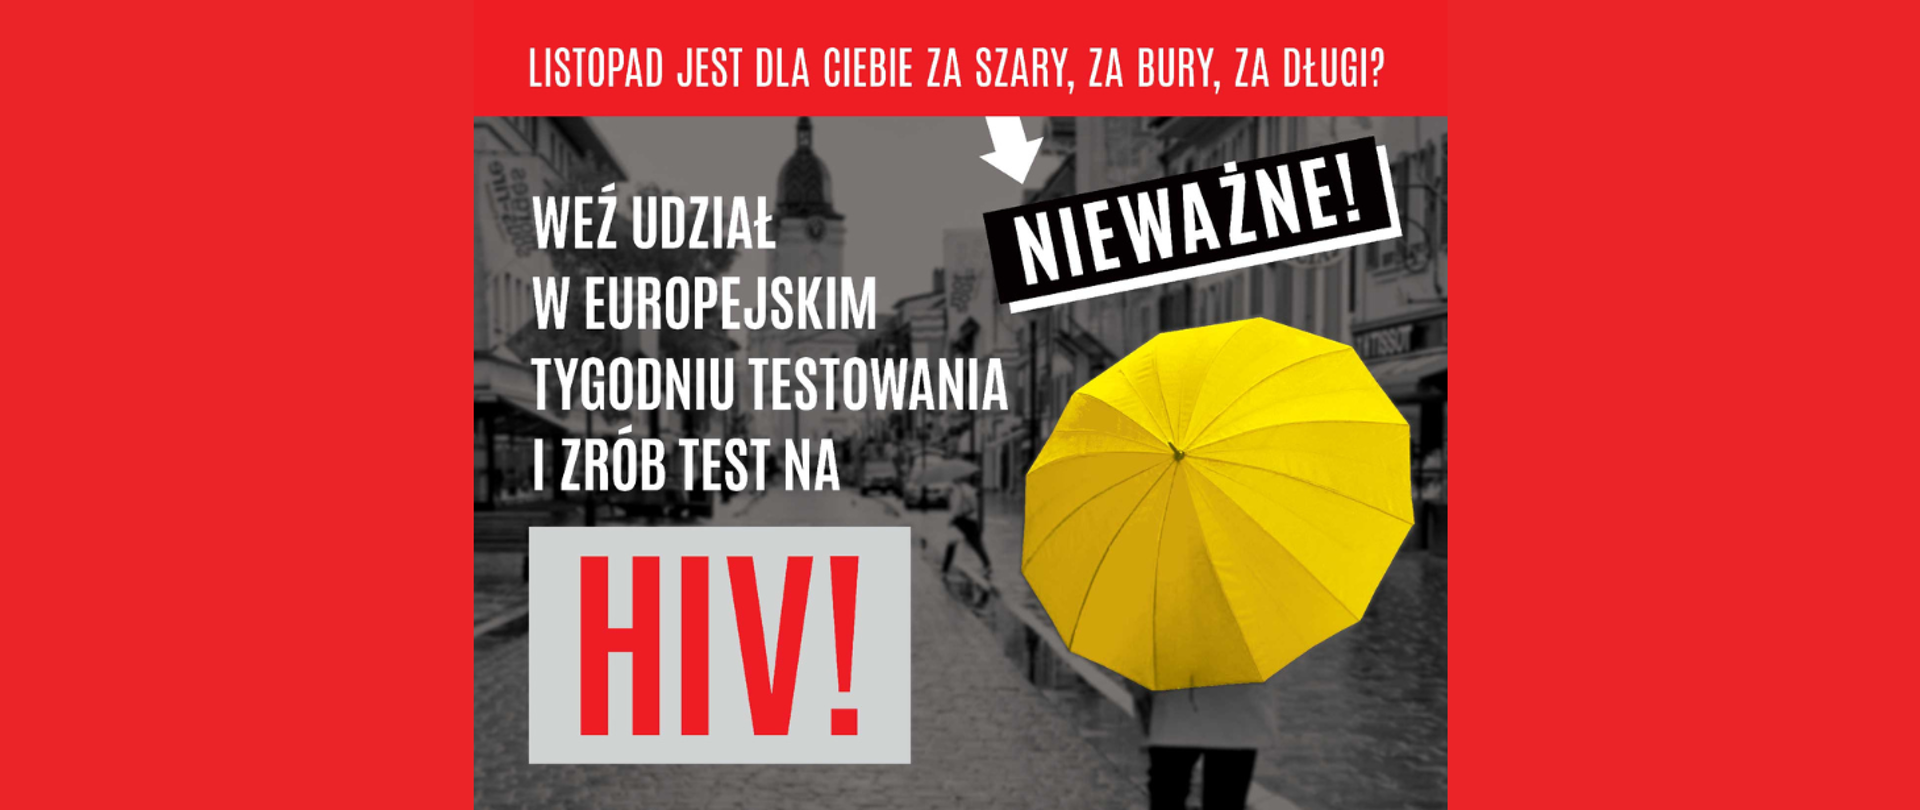 Weź udział w Europejskim Tygodniu Testowania i zrób test na HIV! Pamiętaj! W razie wykrycia zakażenia istnieje skuteczne leczenie, które uchroni przed AIDS i da szansę na długie życie. UWAGA: w każdym województwie działa przynajmniej jeden punkt konsultacyjno-diagnostyczny, w którym anonimowo, bezpłatnie i bez skierowania wykonasz test na HIV. 